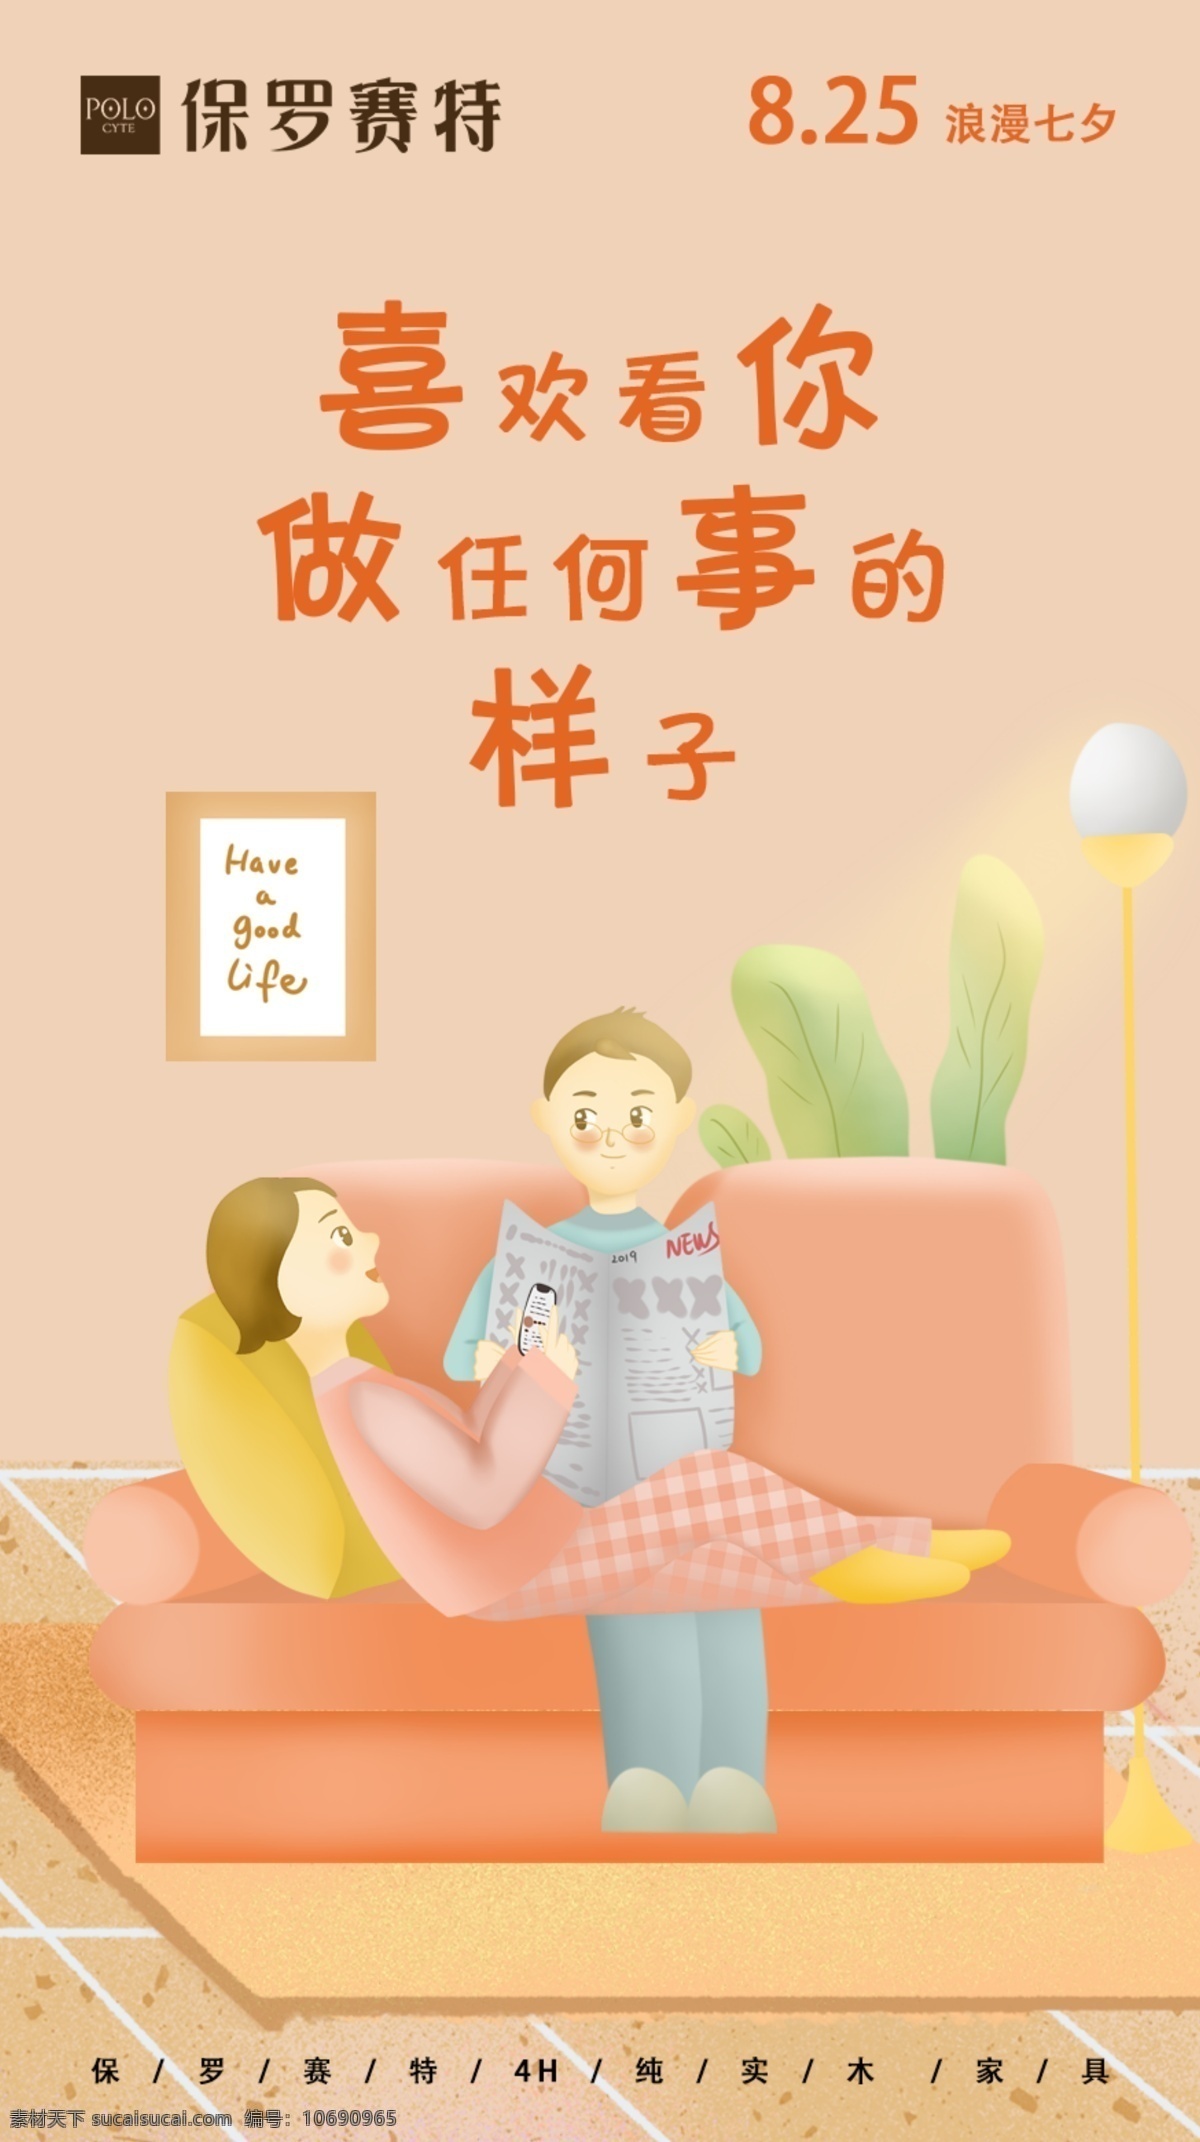 情侣日常海报 情侣日常 情侣 插画图 七夕节 朋友圈海报